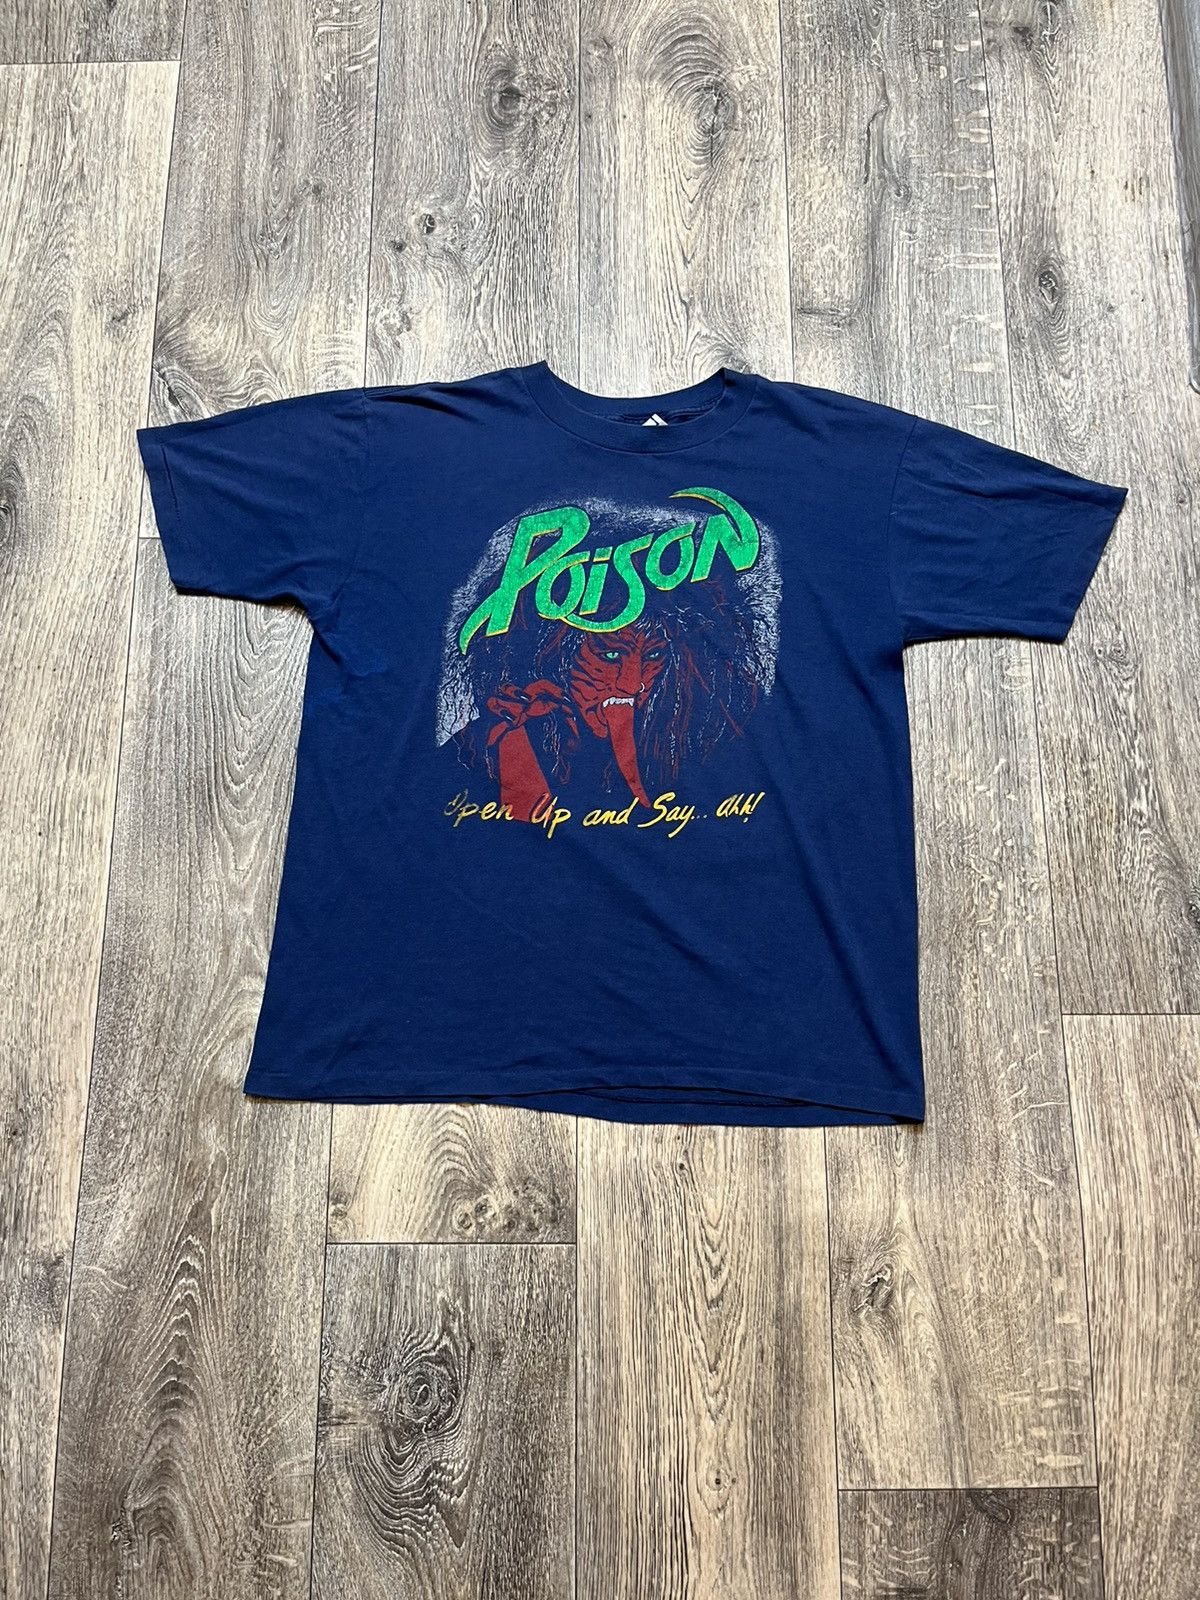 Vintage Vintage Poison concert tour 80-90s t-shirt tee Size XL / US 12-14 / IT 48-50 - 1 Preview